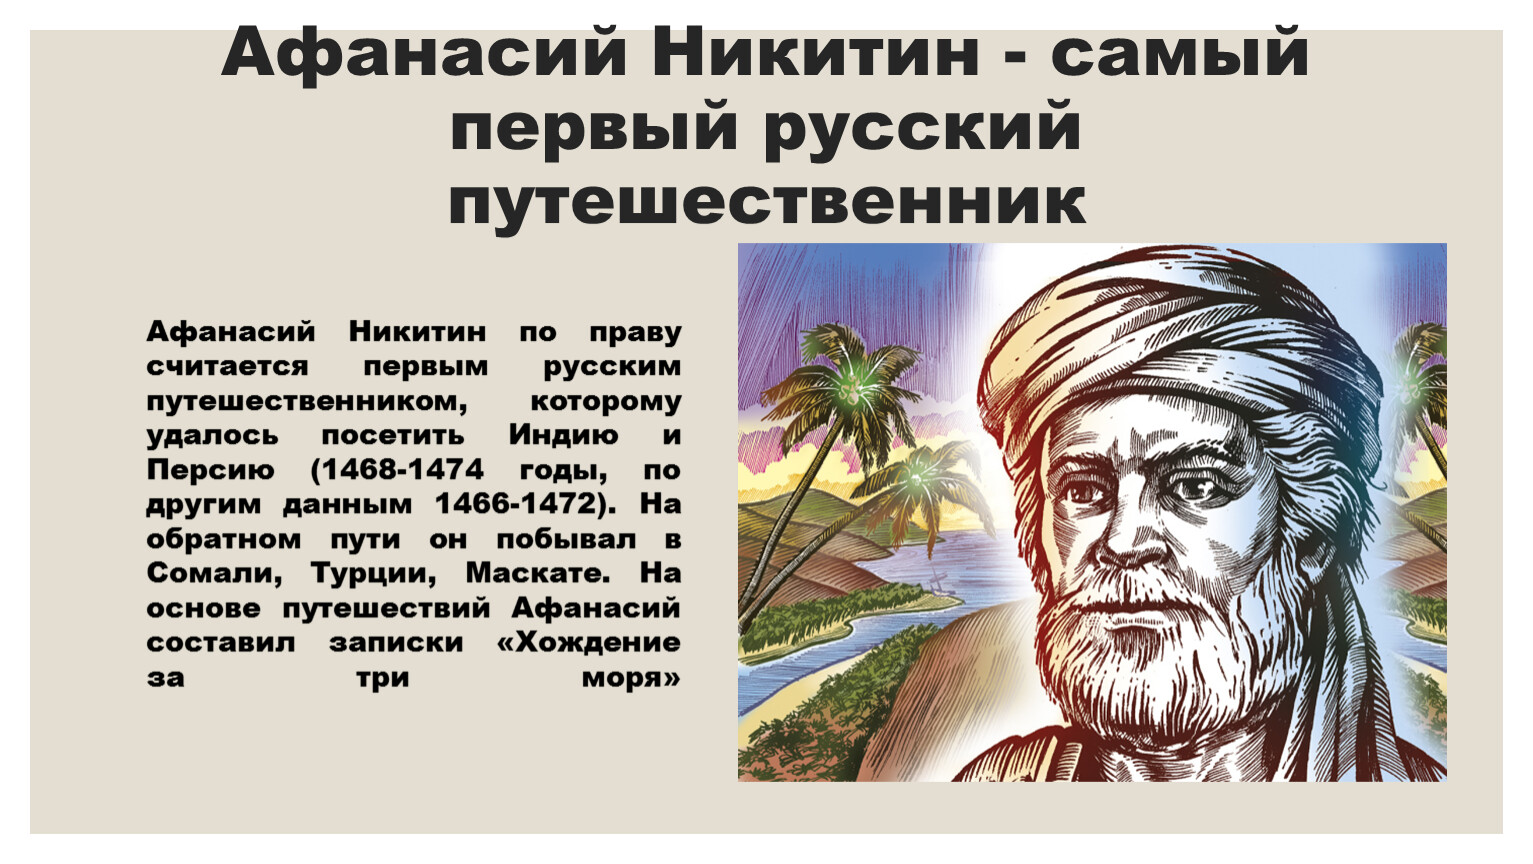 Афанасий Никитин - самый первый русский путешественник